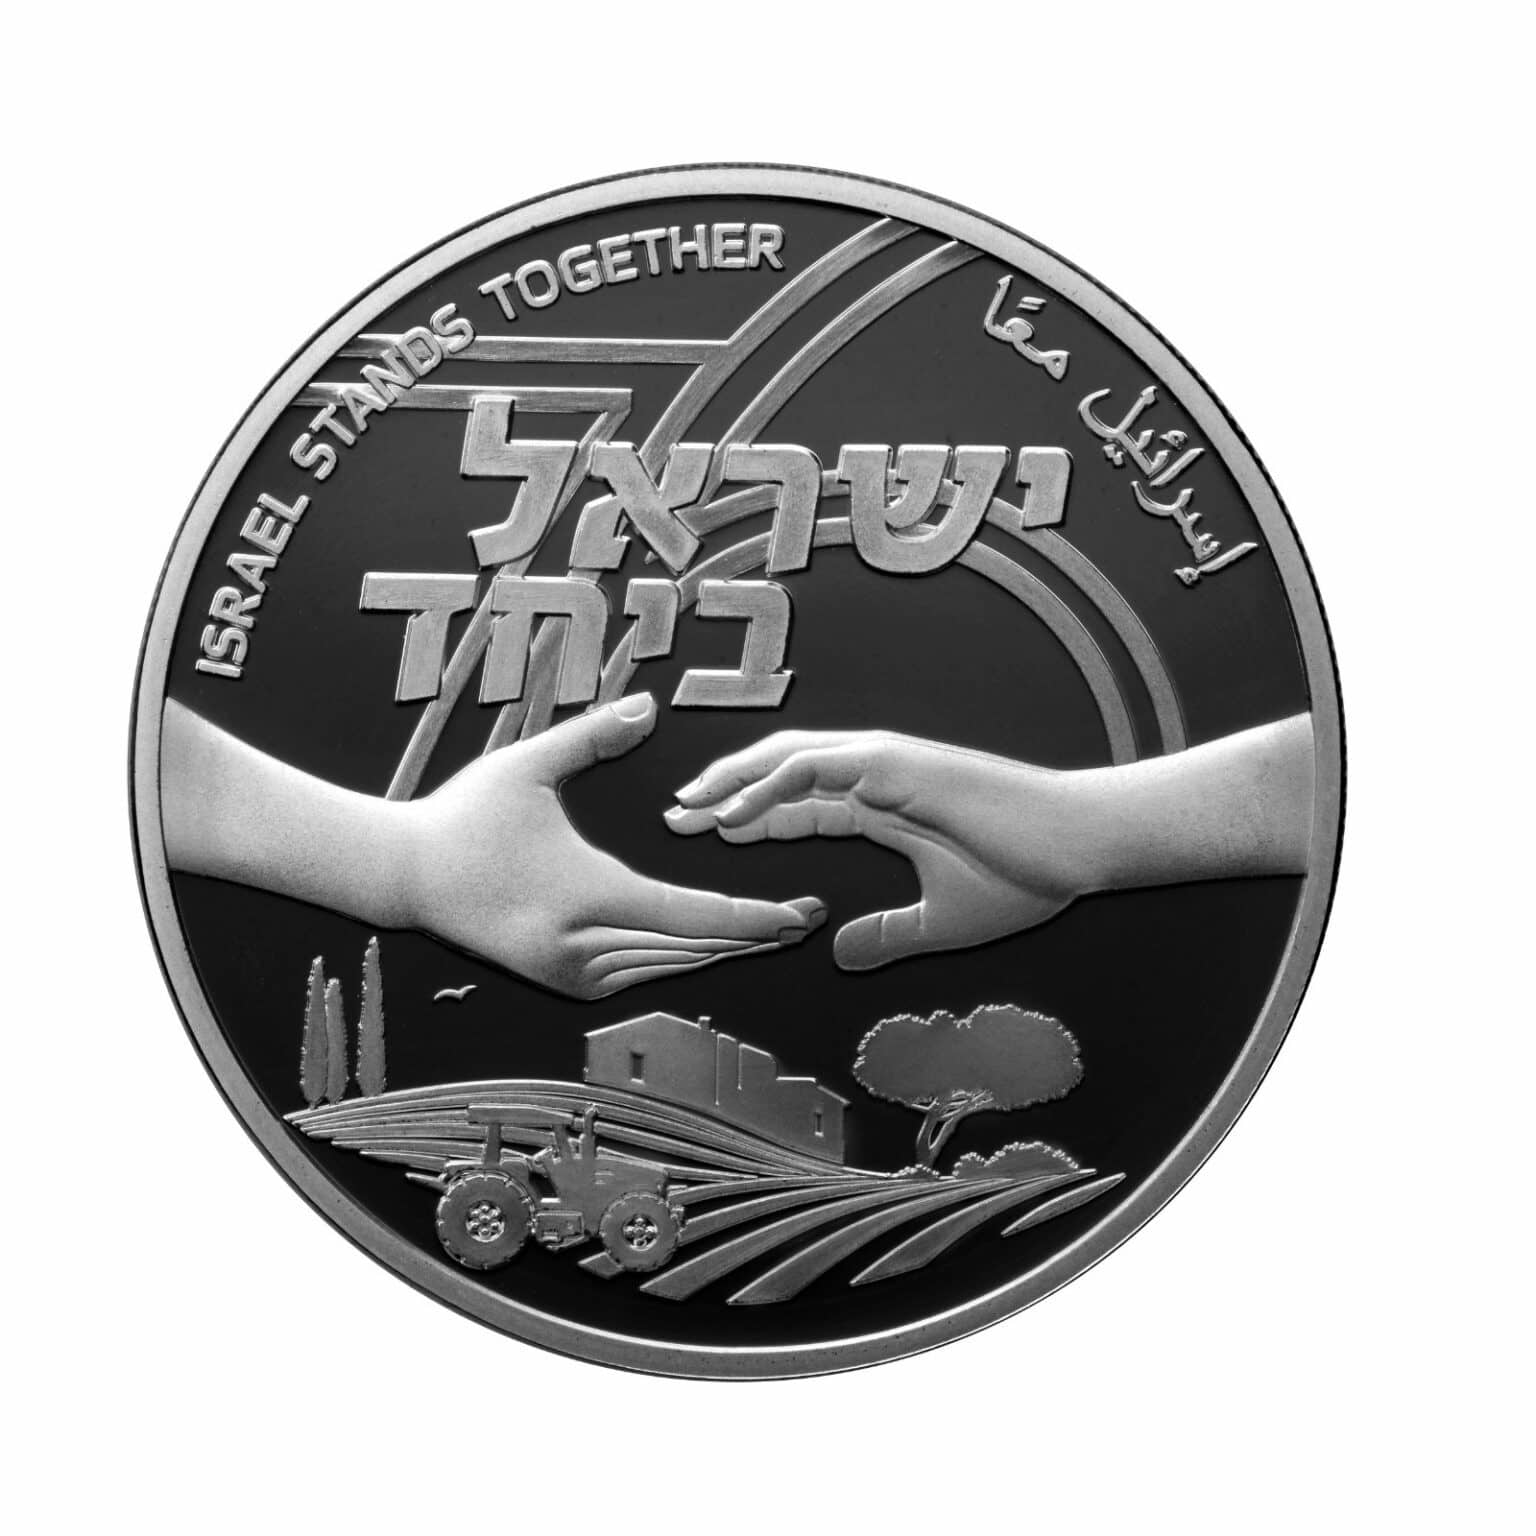 בנק ישראל: הושקו מטבעות “ישראל ביחד” ליום העצמאות ה-76 ואירועי אוקטובר